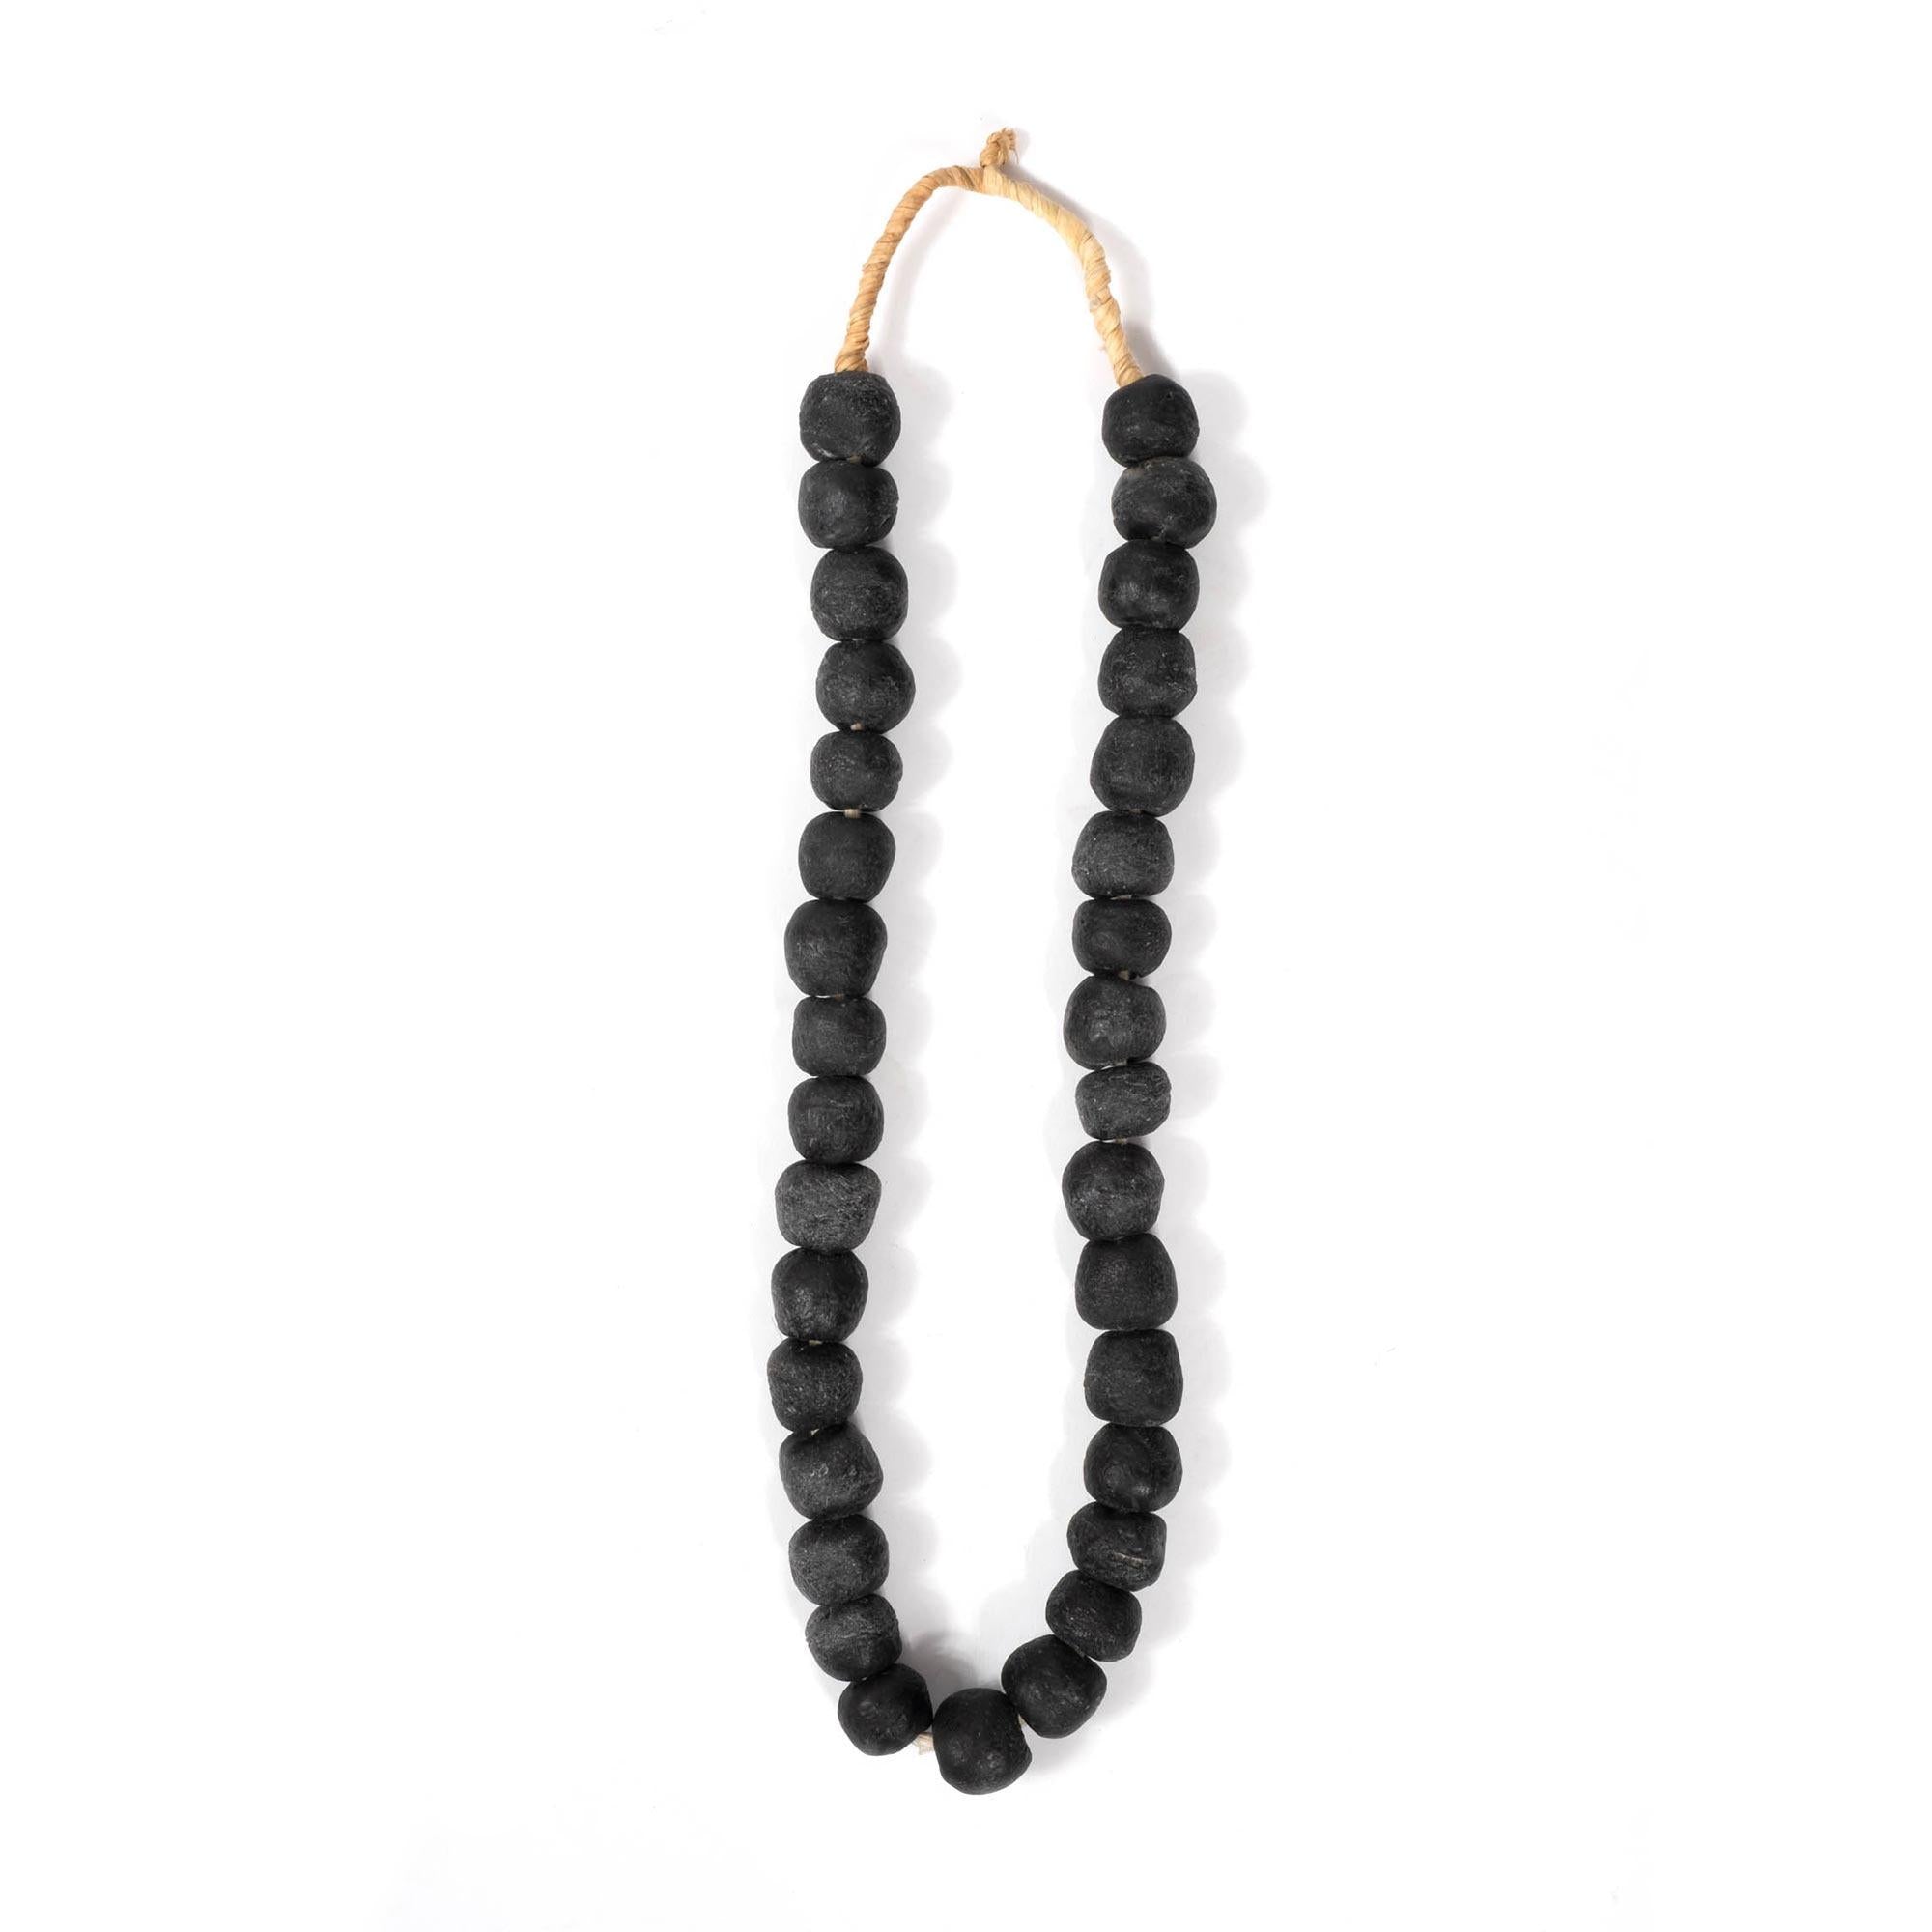 Vintage Sea Glass Beads Black